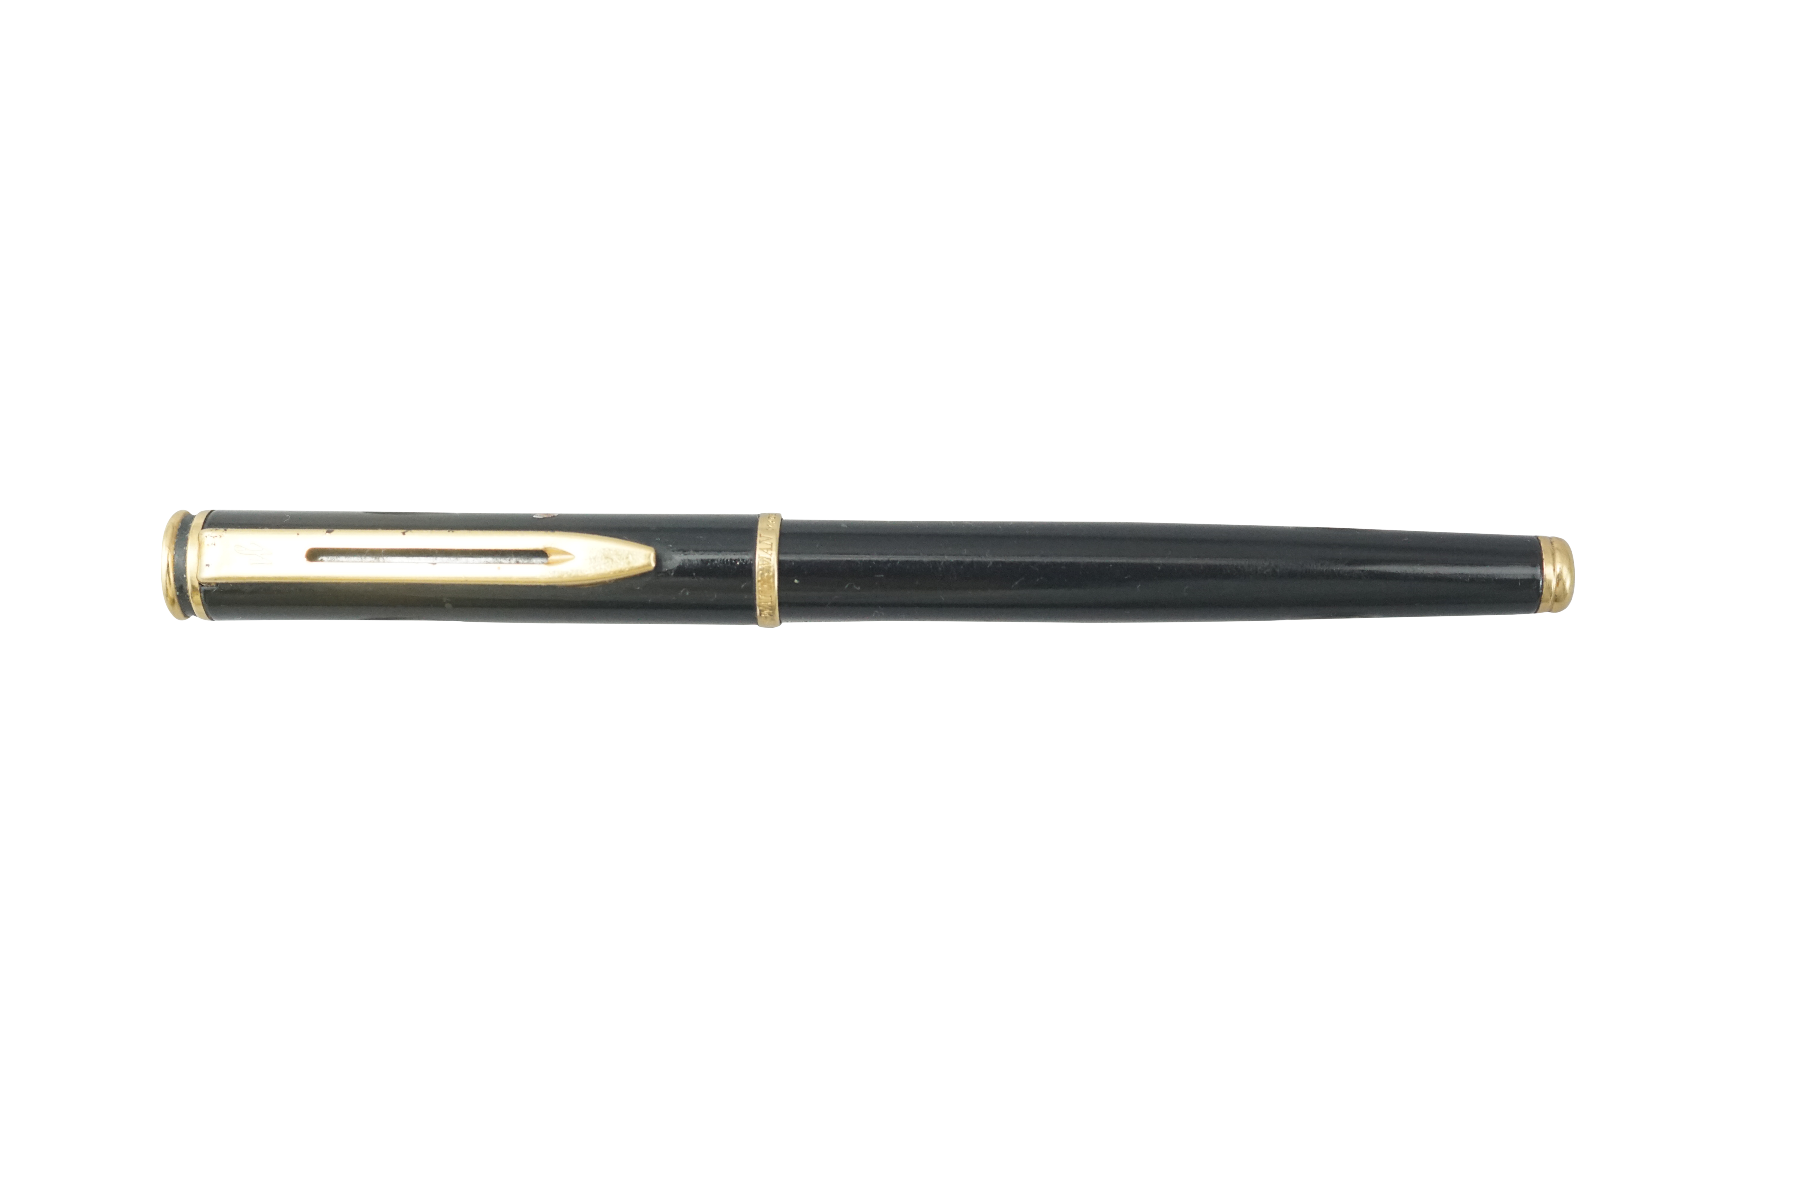 WaterMan Model :91083  Black Color Body With Golden Color Clip Medium Nib fountain Pen - Nib Broken to be replaced.